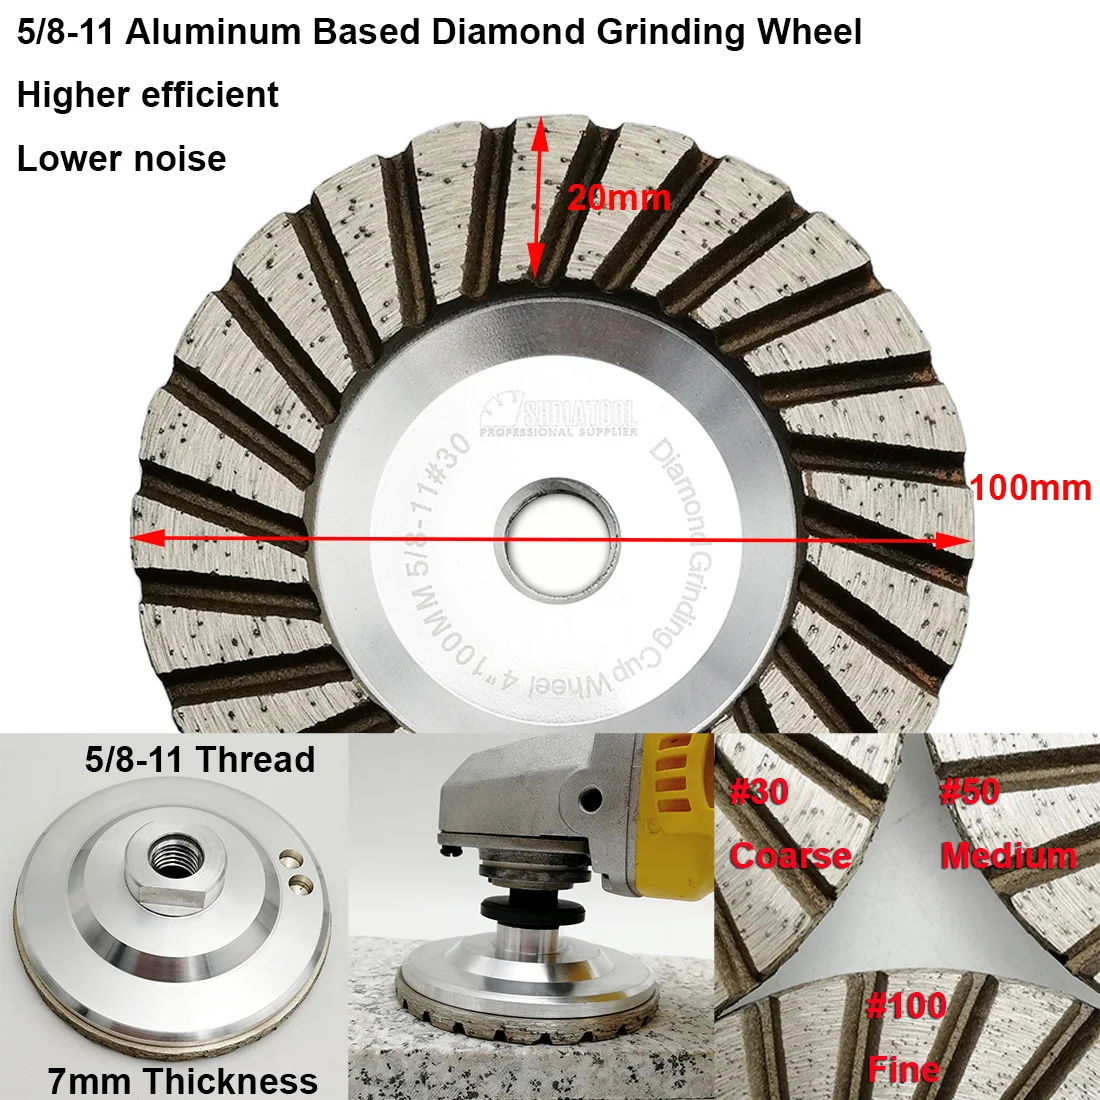 SHDIATOOL 1 шт. диаметр 100 мм на основе алюминия шлифовальный круг M14 или 5/8-11 резьба 4 дюйма алмазный шлифовальный диск низкий уровень шума